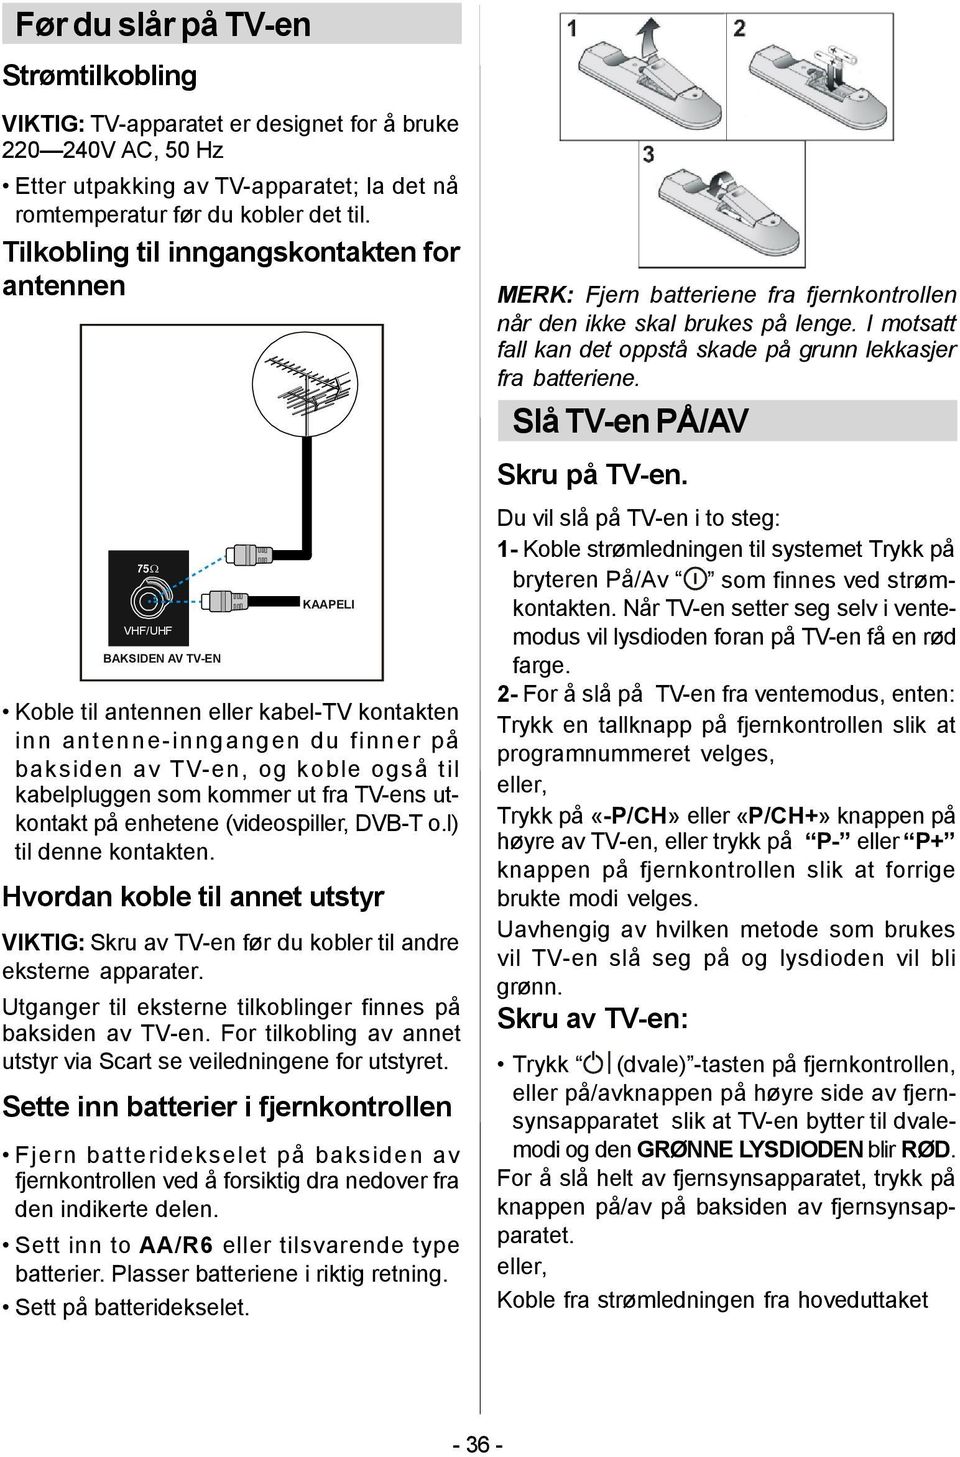 kabelpluggen som kommer ut fra TV-ens utkontakt på enhetene (videospiller, DVB-T o.l) til denne kontakten.